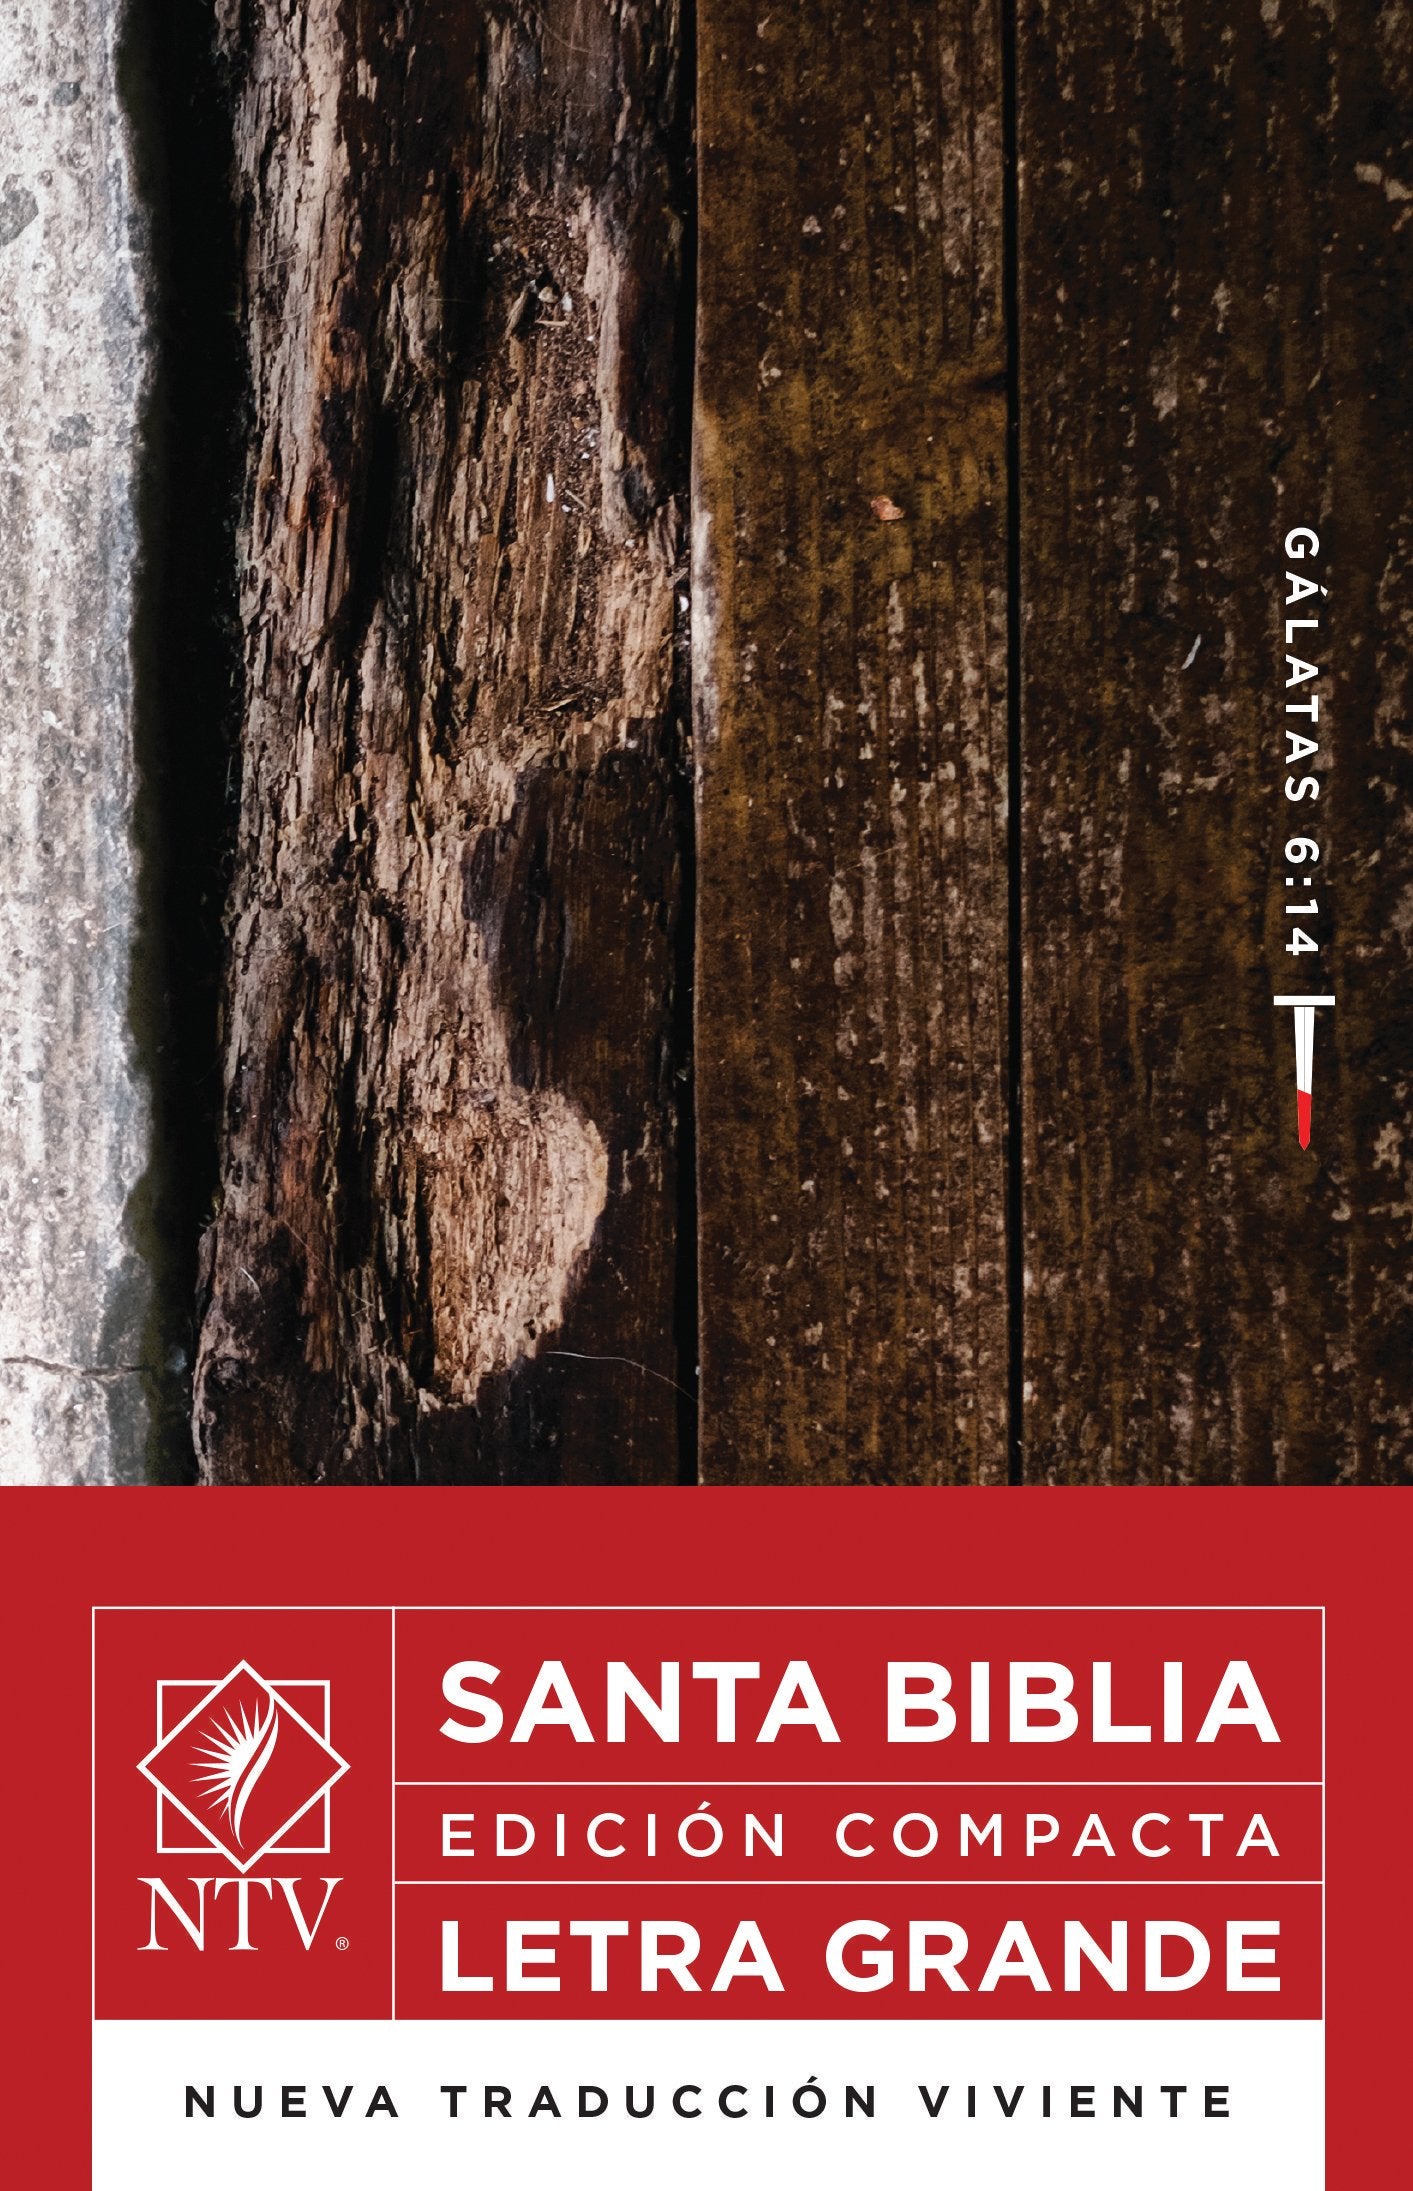 Biblia NTV Edición compacta letra Grandre - Librería Libros Cristianos - Biblia